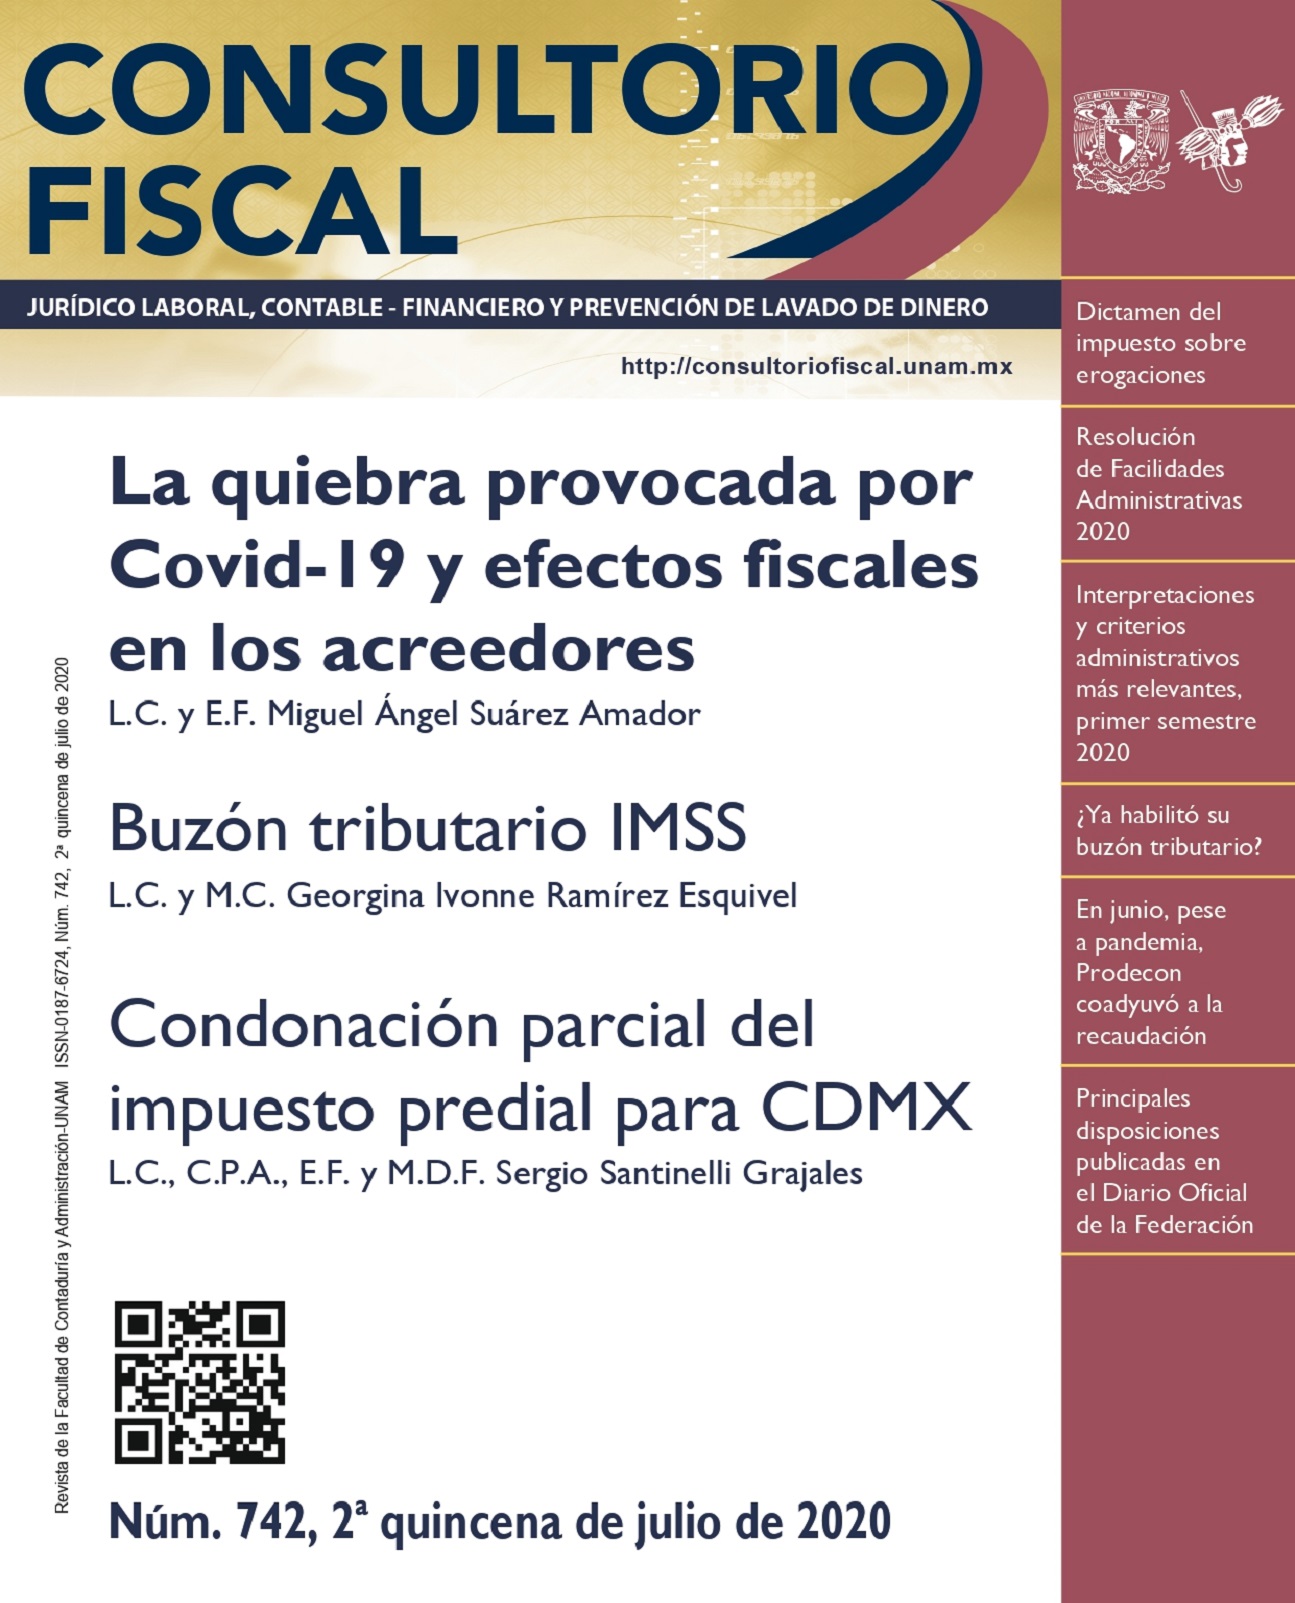 La quiebra provocada por Covid-19 y efectos fiscales en los acreedores